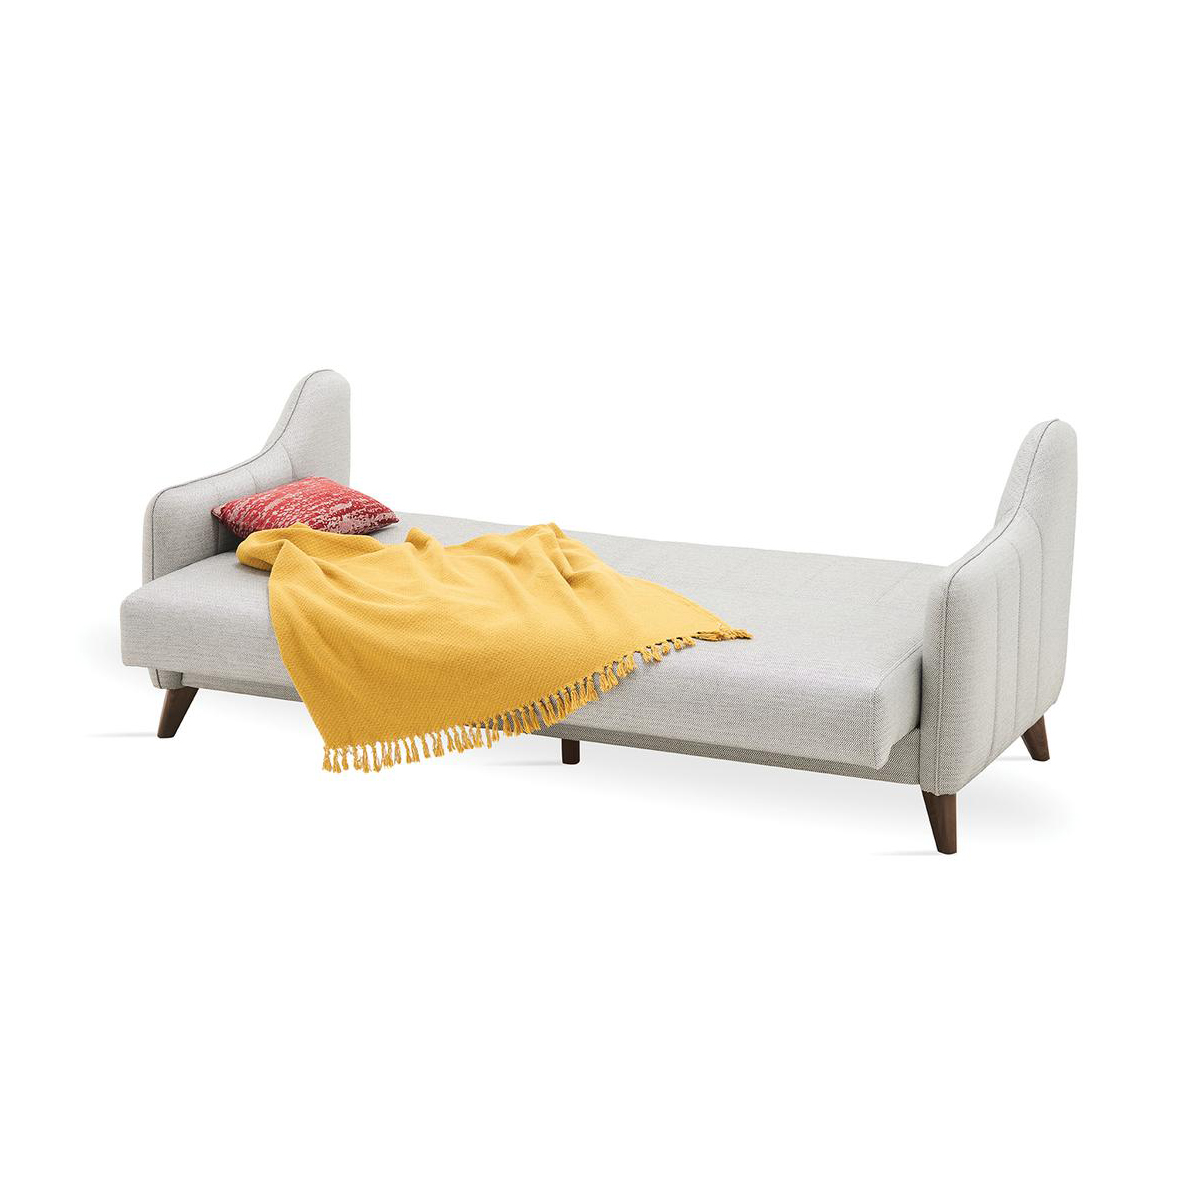 Диван-кровать Enza Home Fabia, трёхместный, размер 215х92х84 см